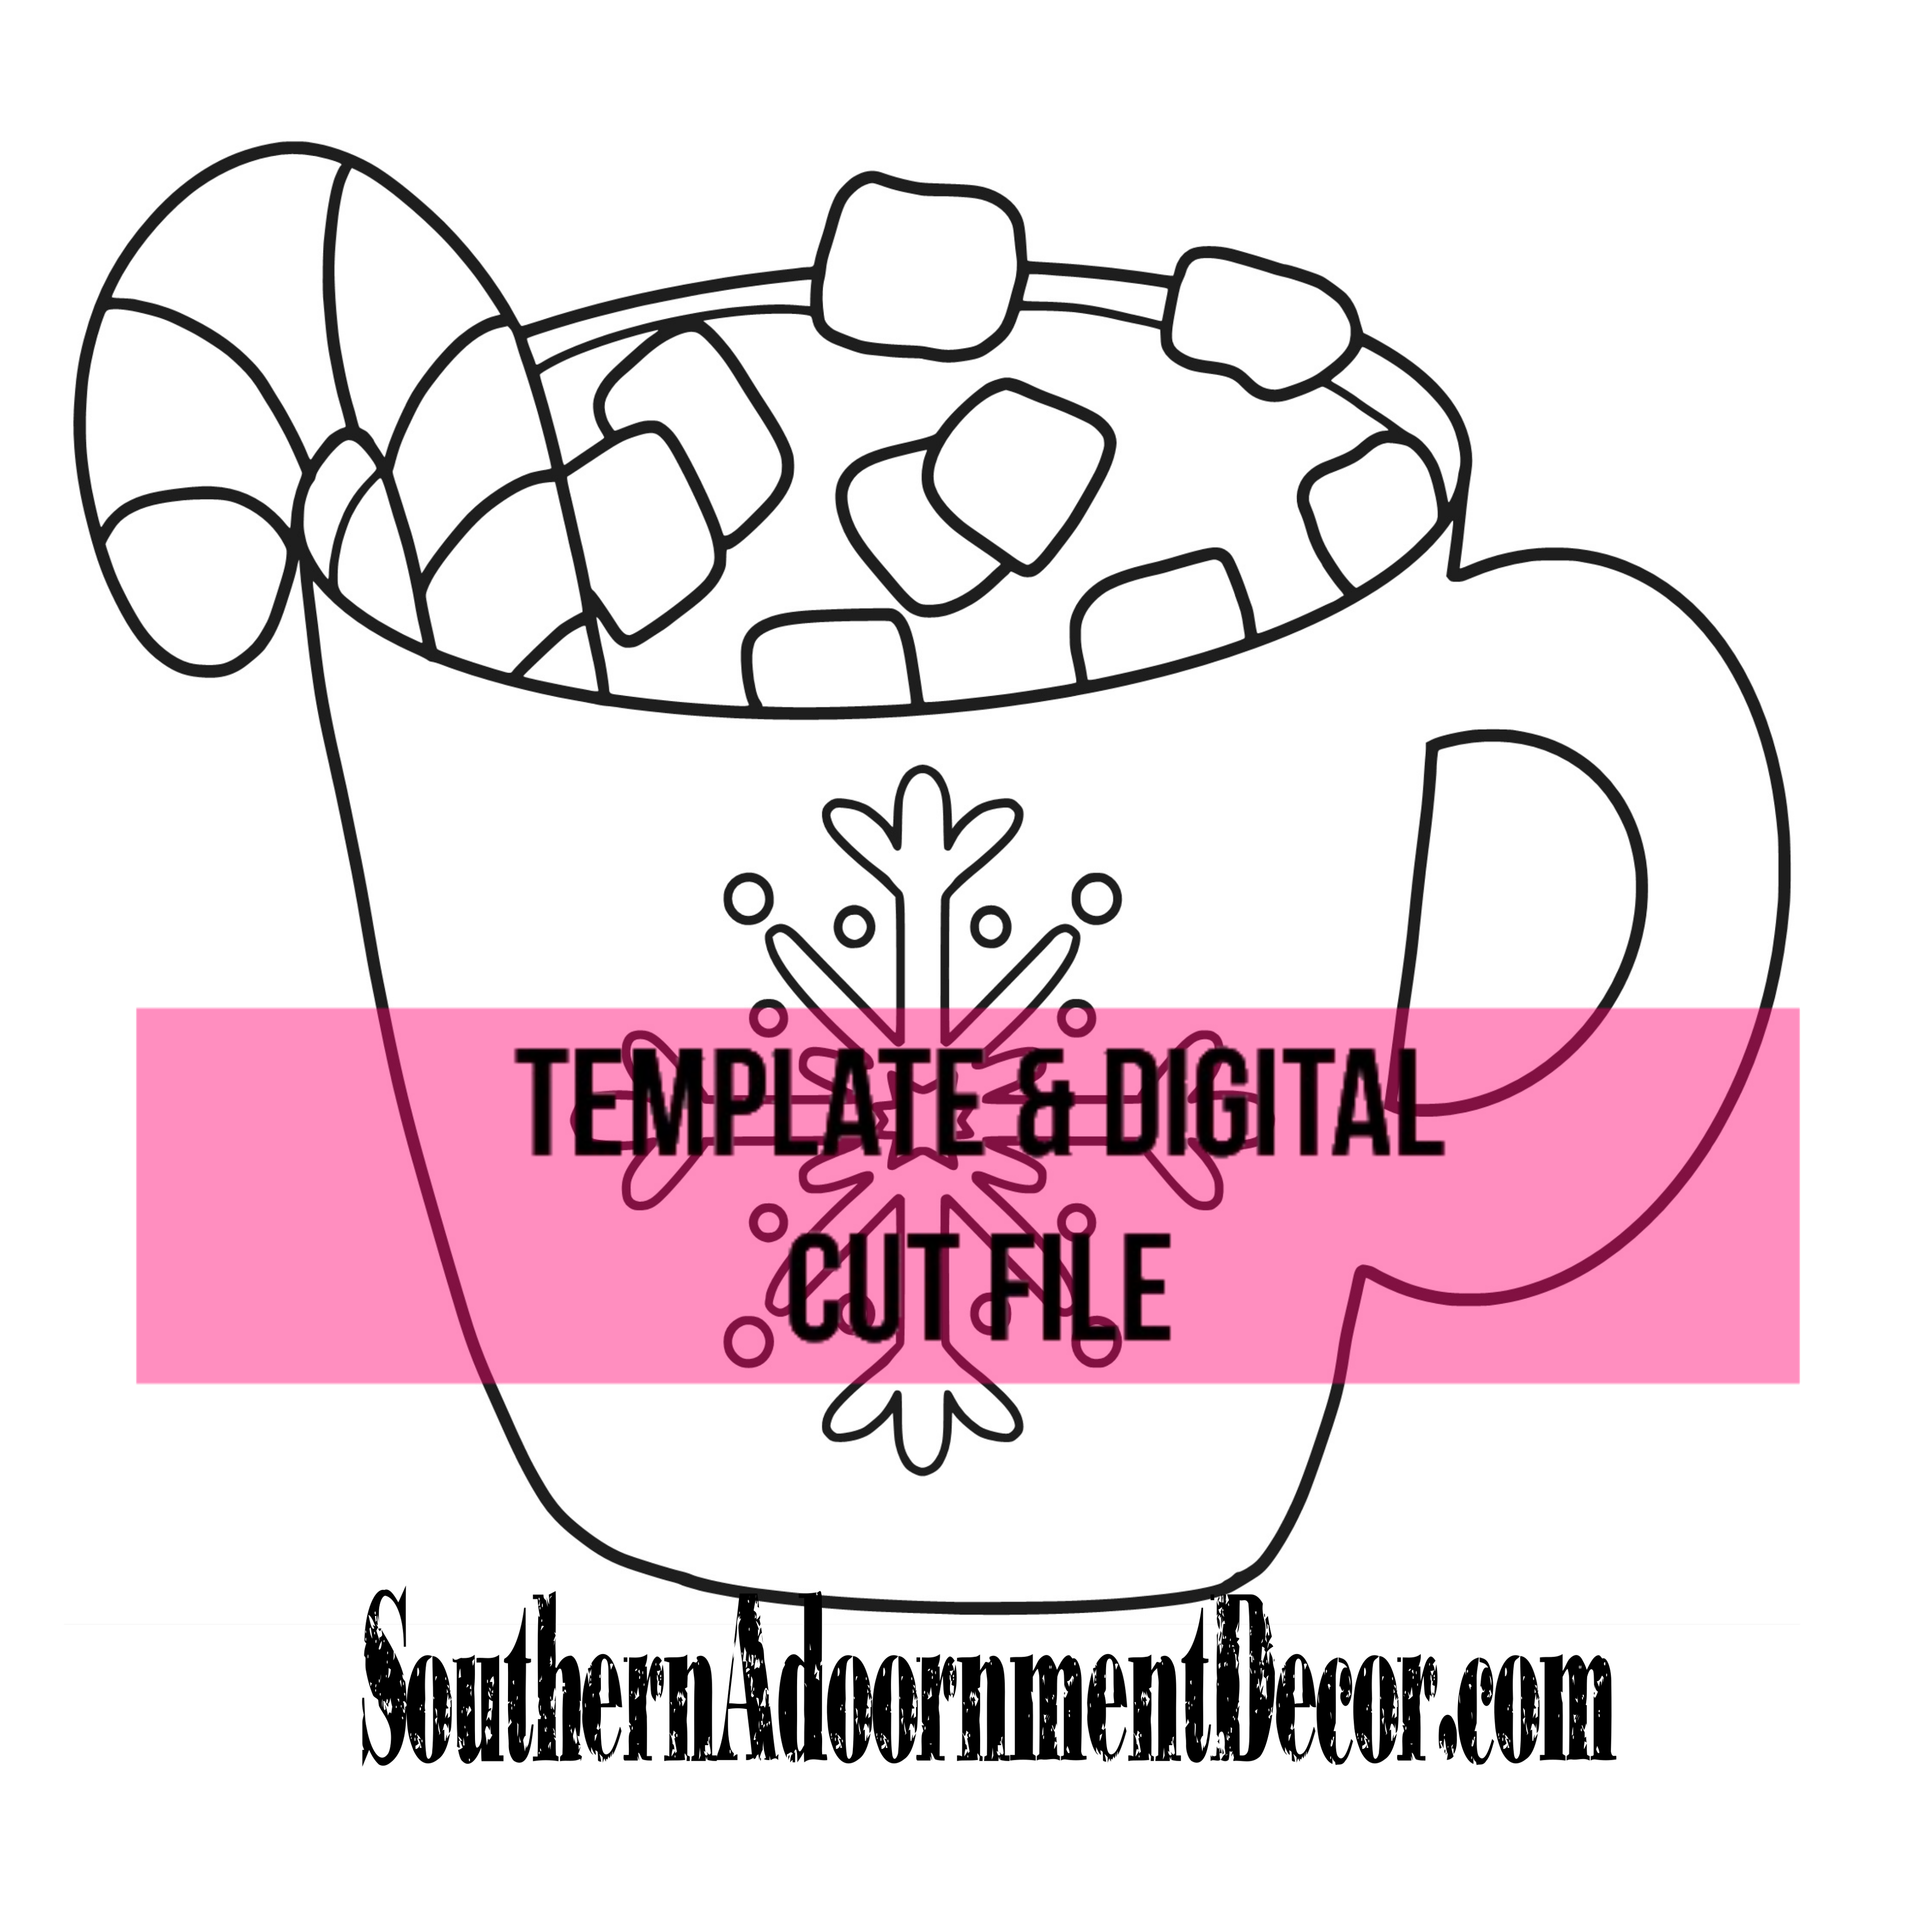 Hot Chocolate Template & Digital Cut File